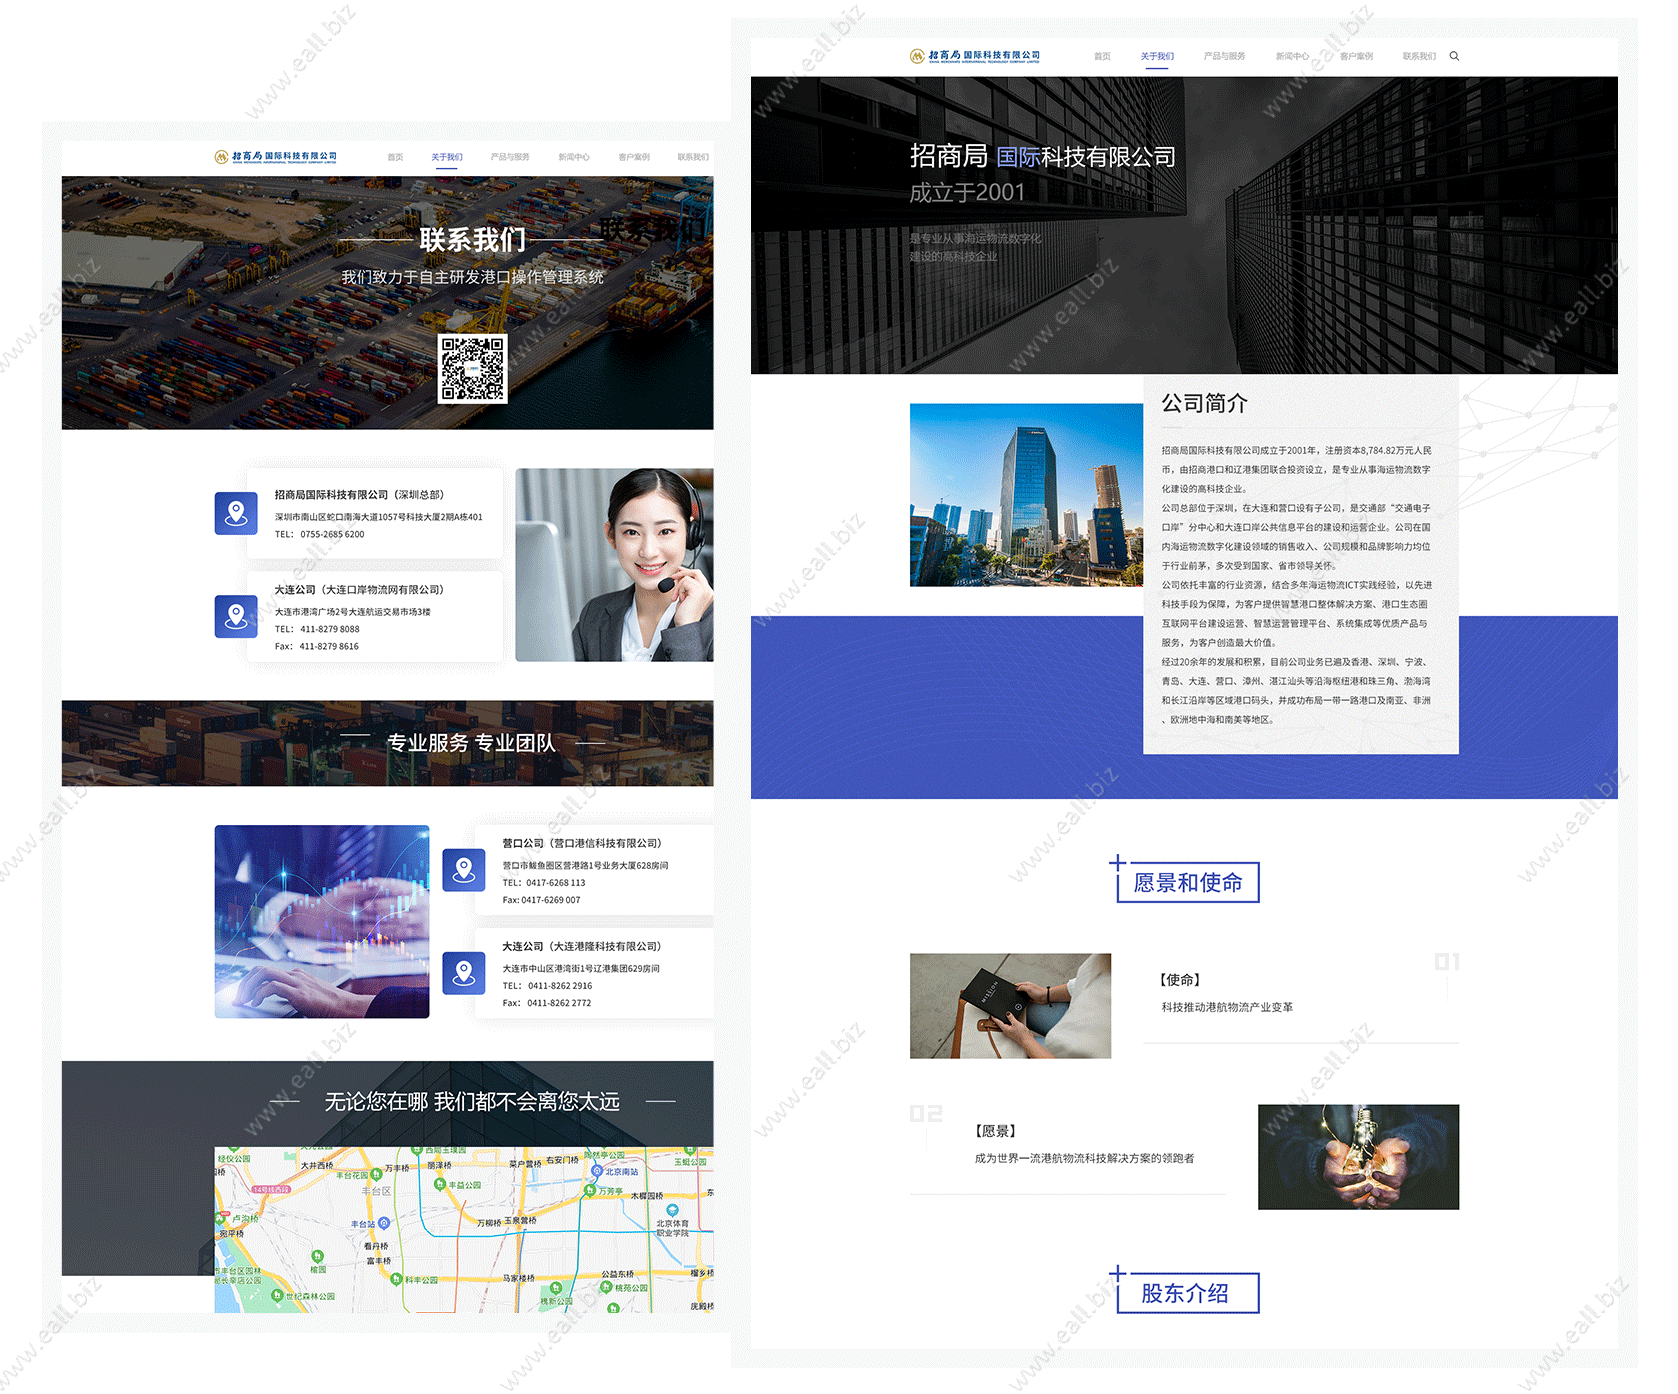 hongkong web development cmhit